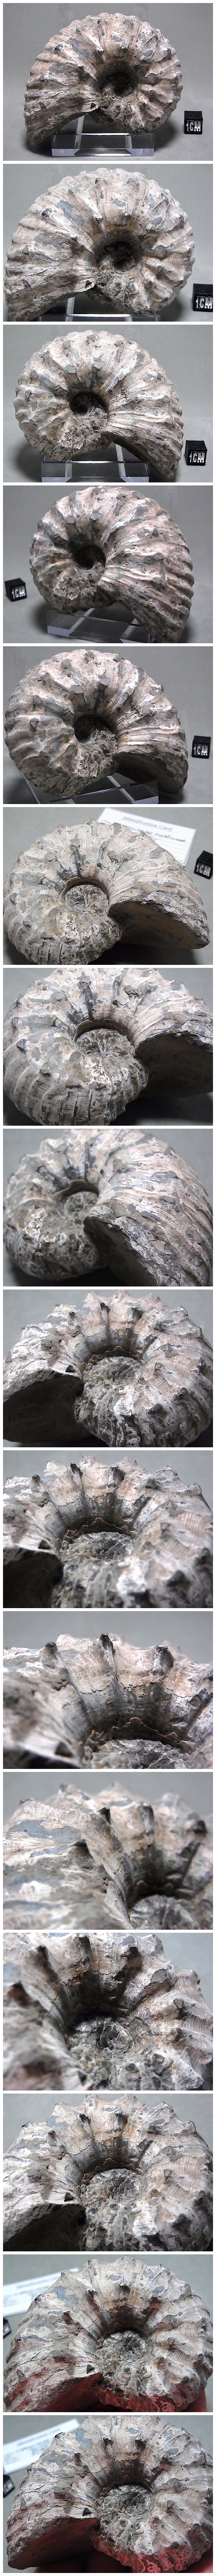 【 販売済 化石 】アンモナイト化石 Liparoceras リパロセラス イギリス産